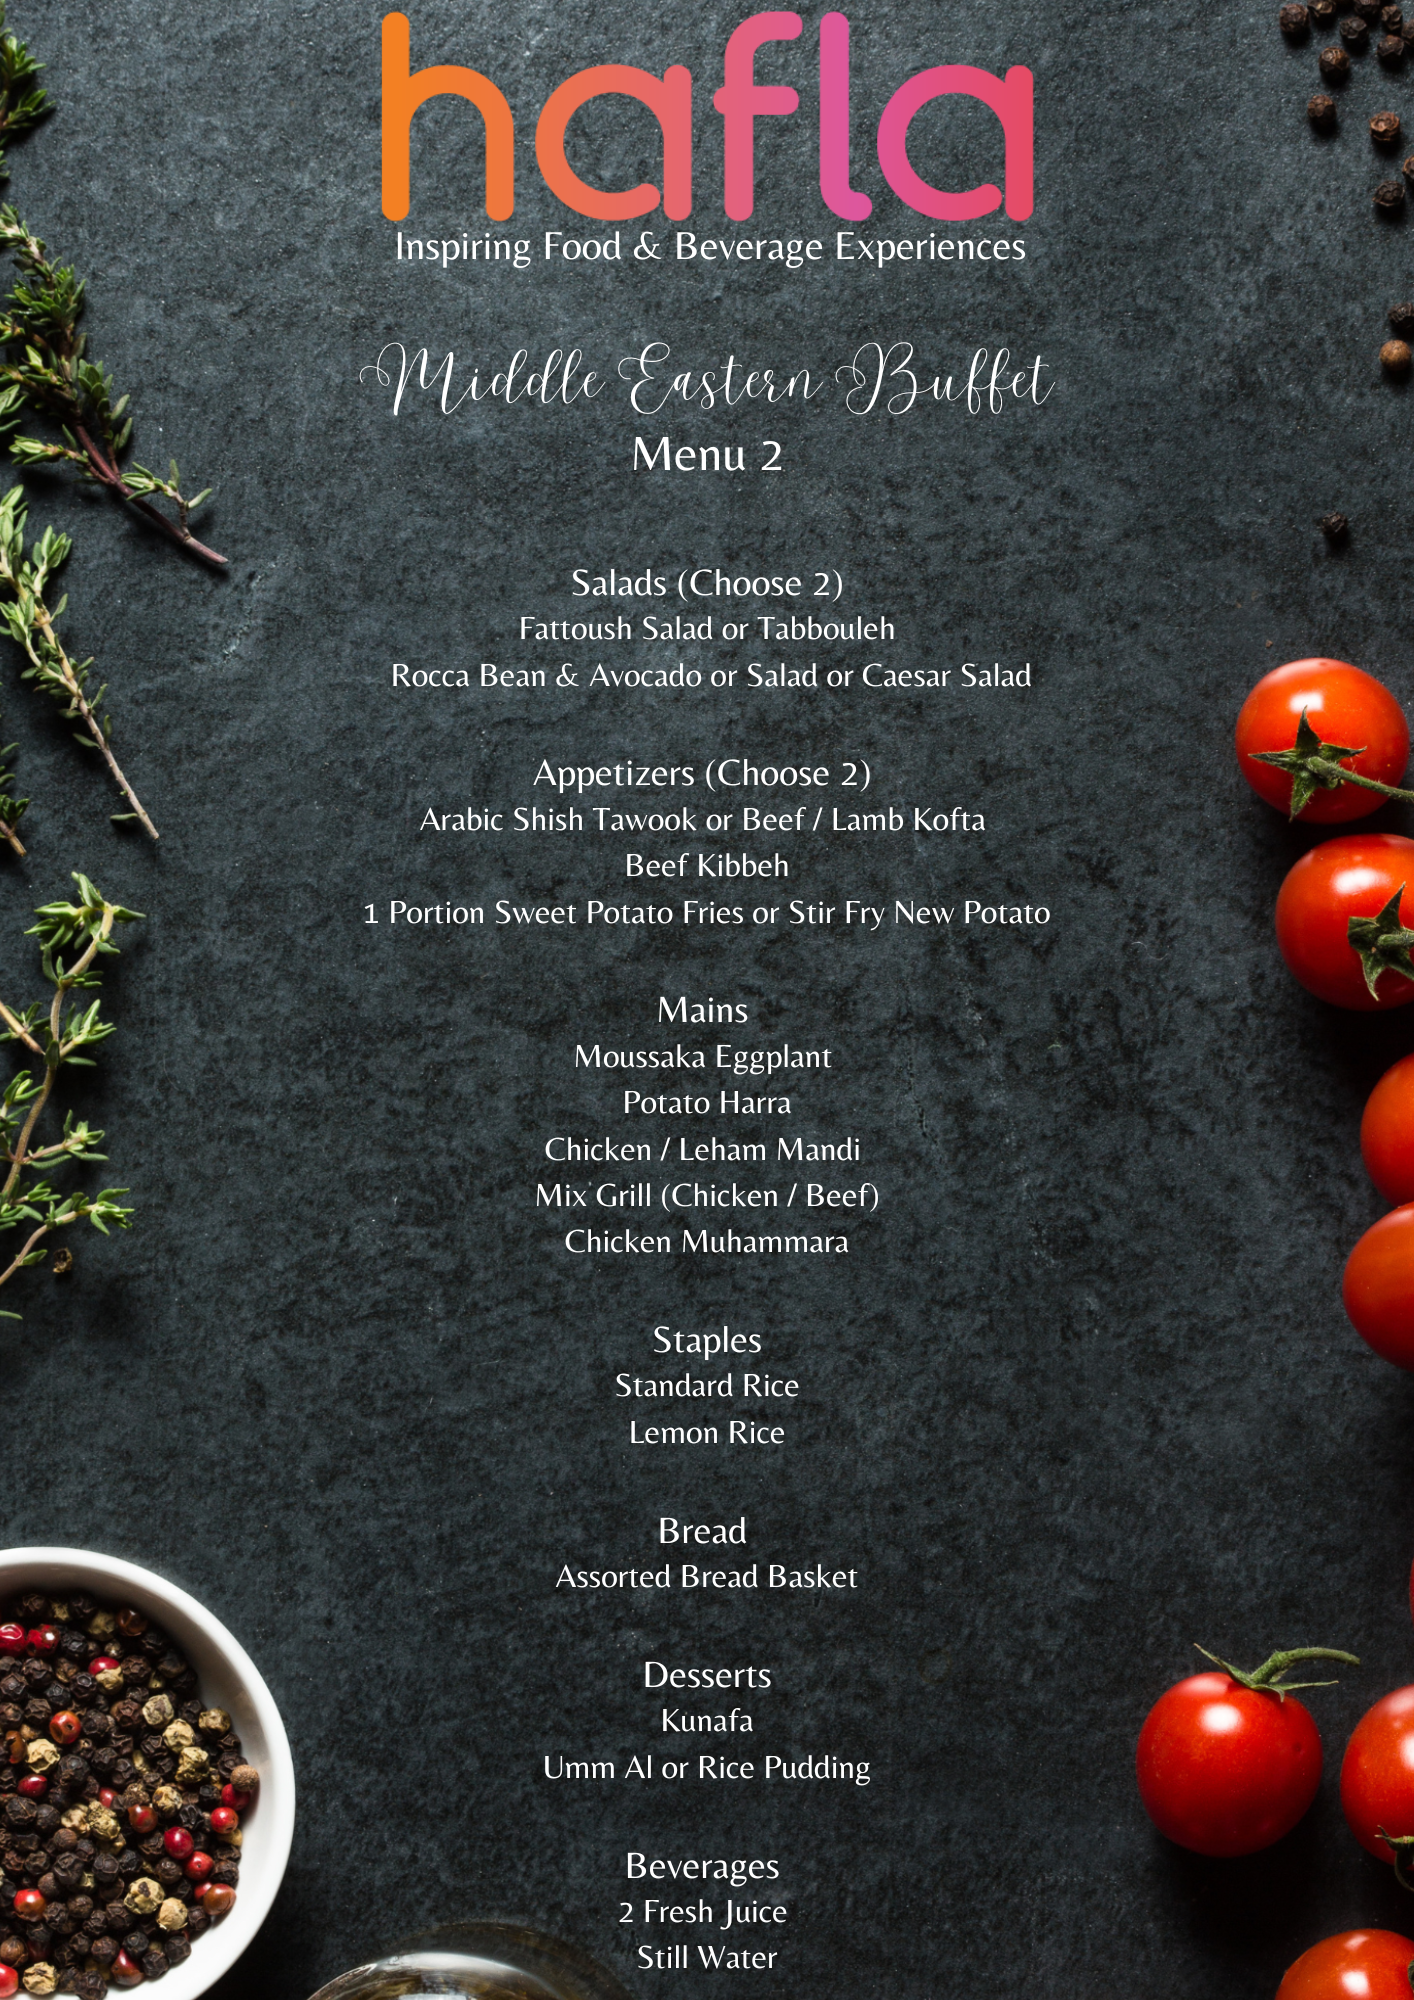 Middle Eastern Buffet by Taste Studio